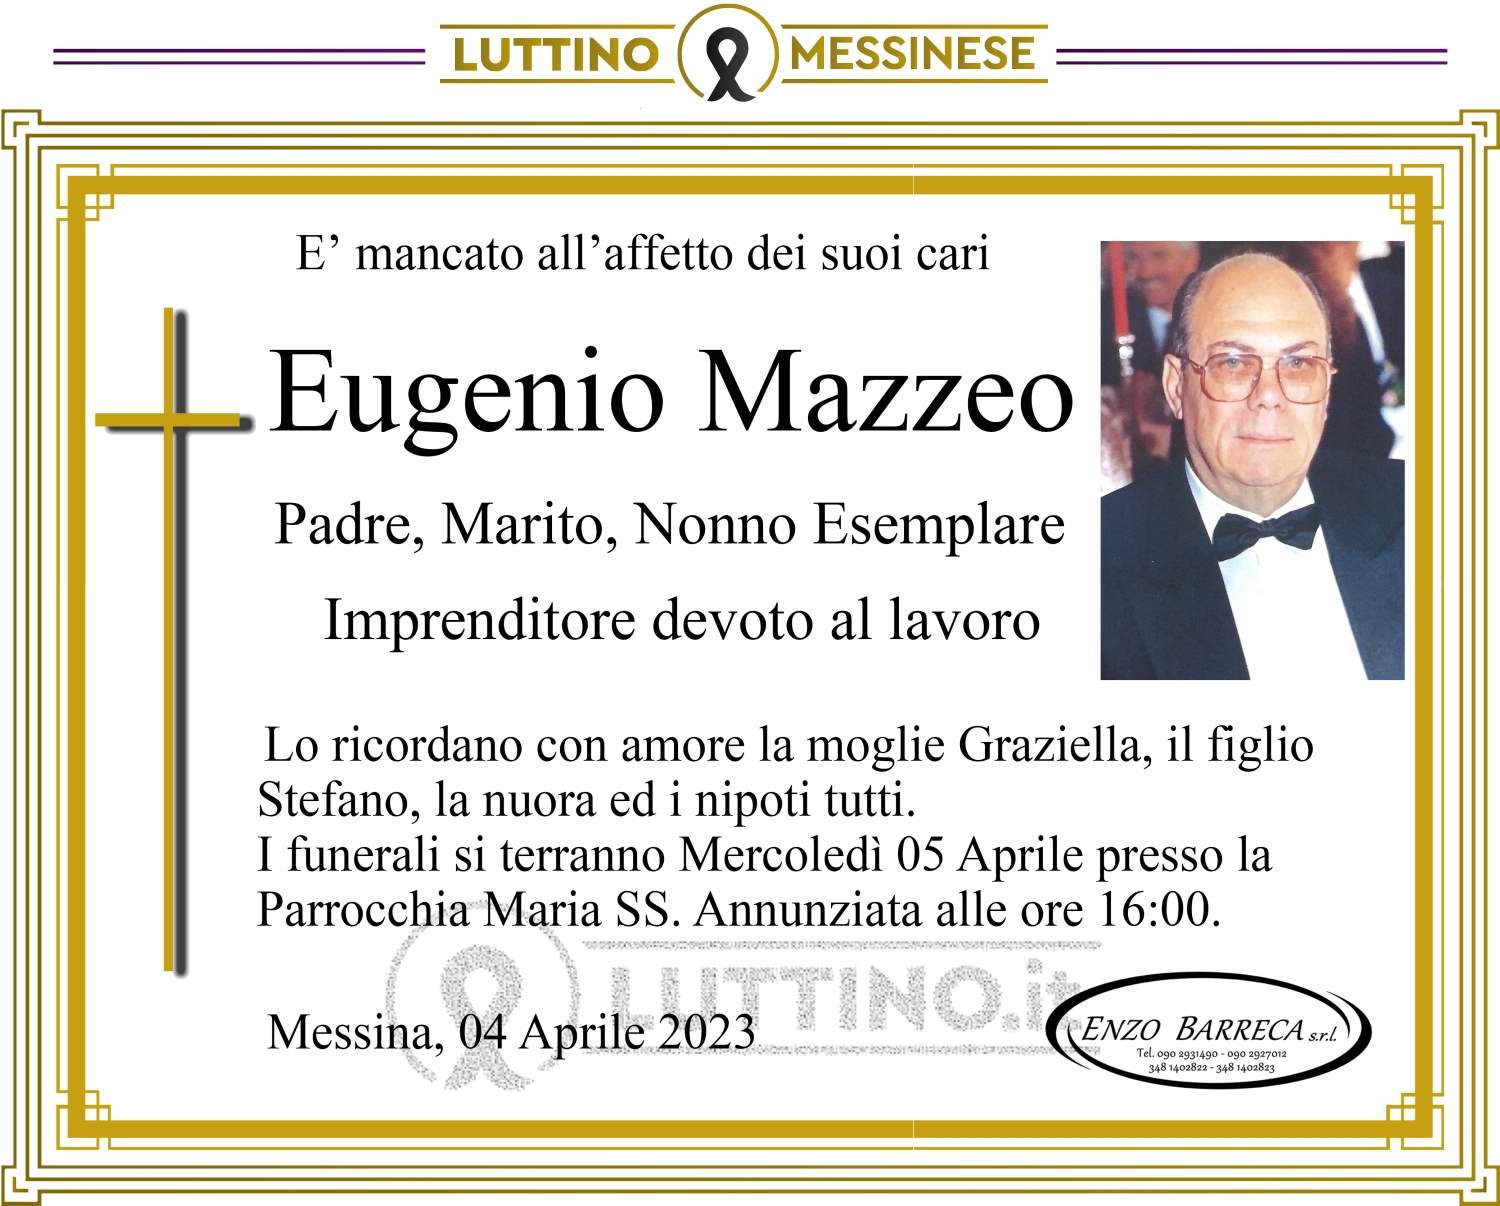 Eugenio Mazzeo